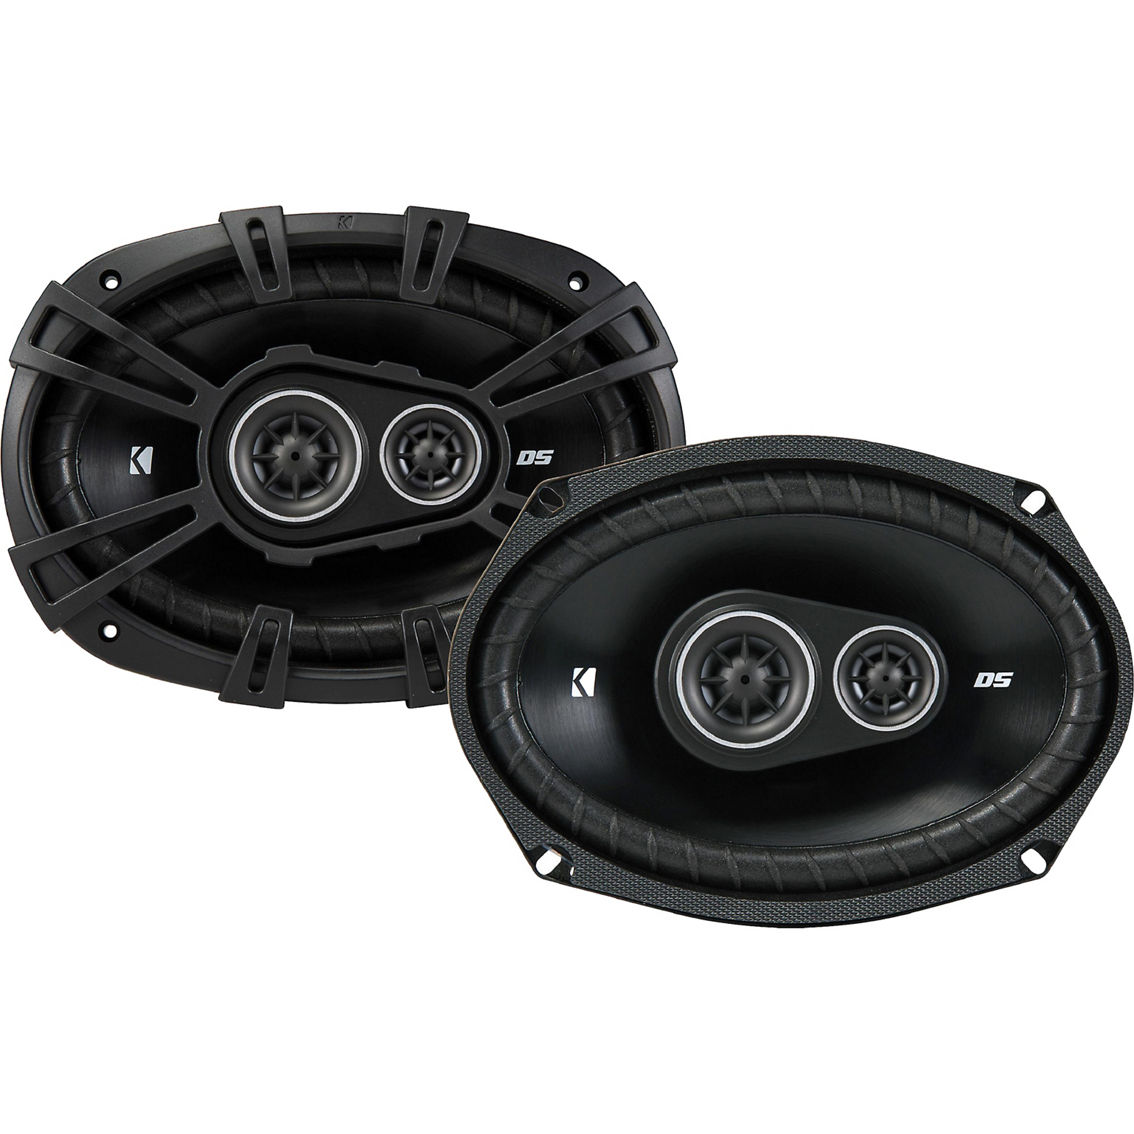 Kicker DS Series 6 in. x 9 in. 3 Way Car Speakers - Image 6 of 6